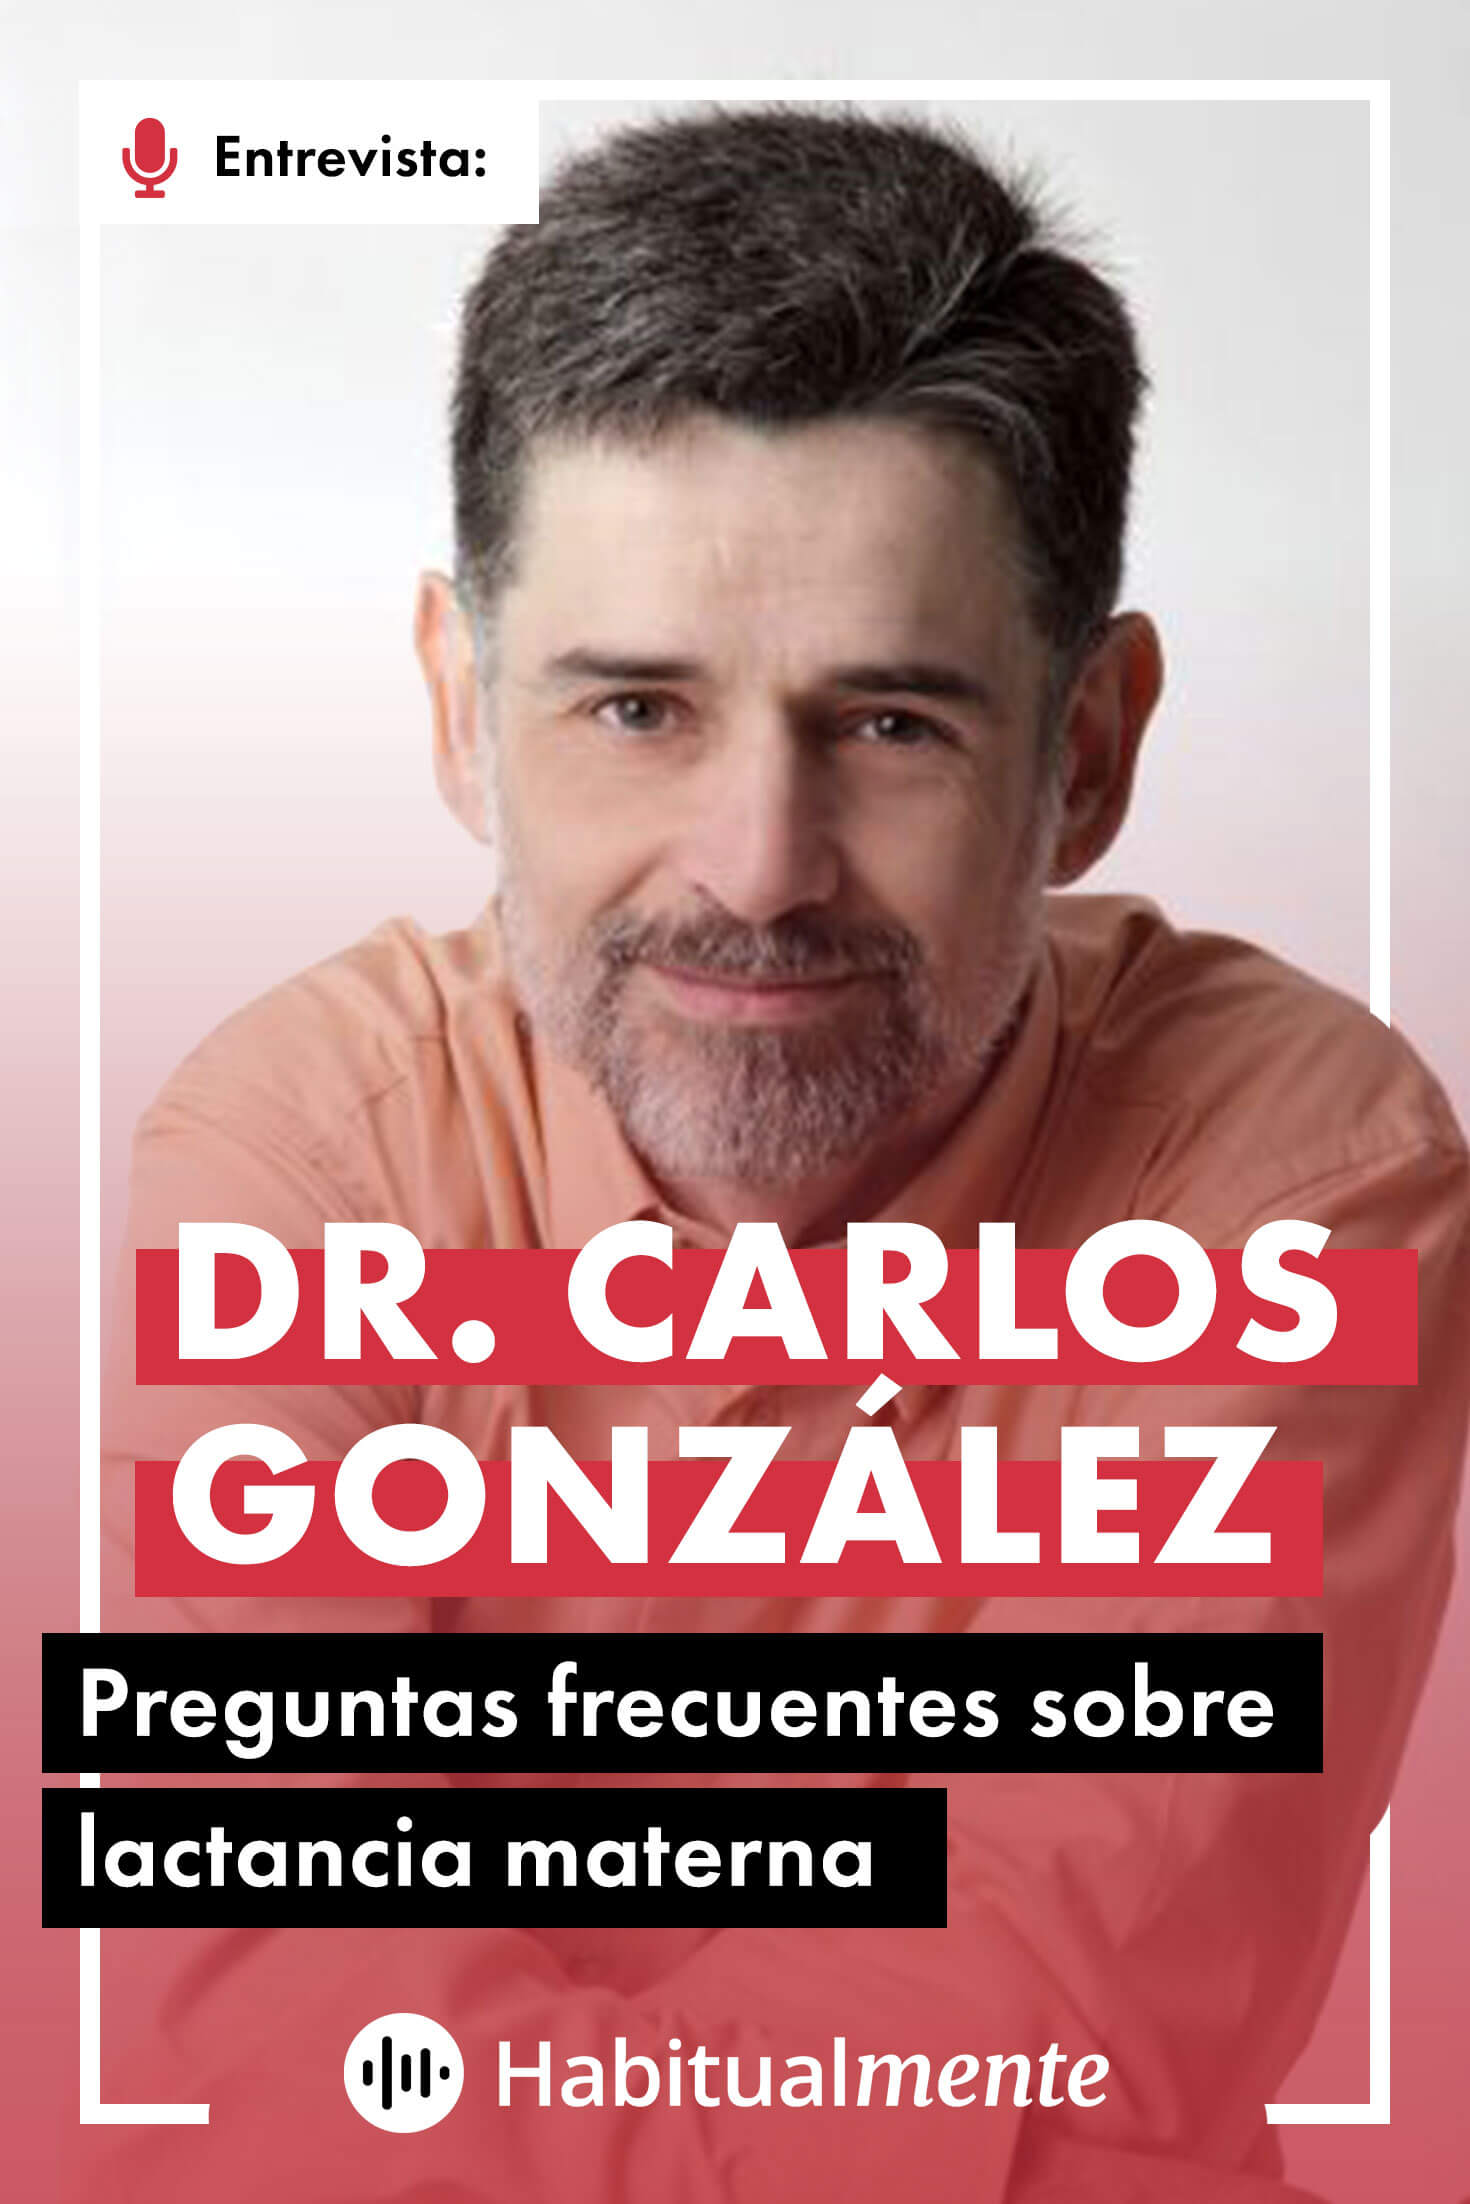 5 motivos para no leer los libros del pediatra Carlos González